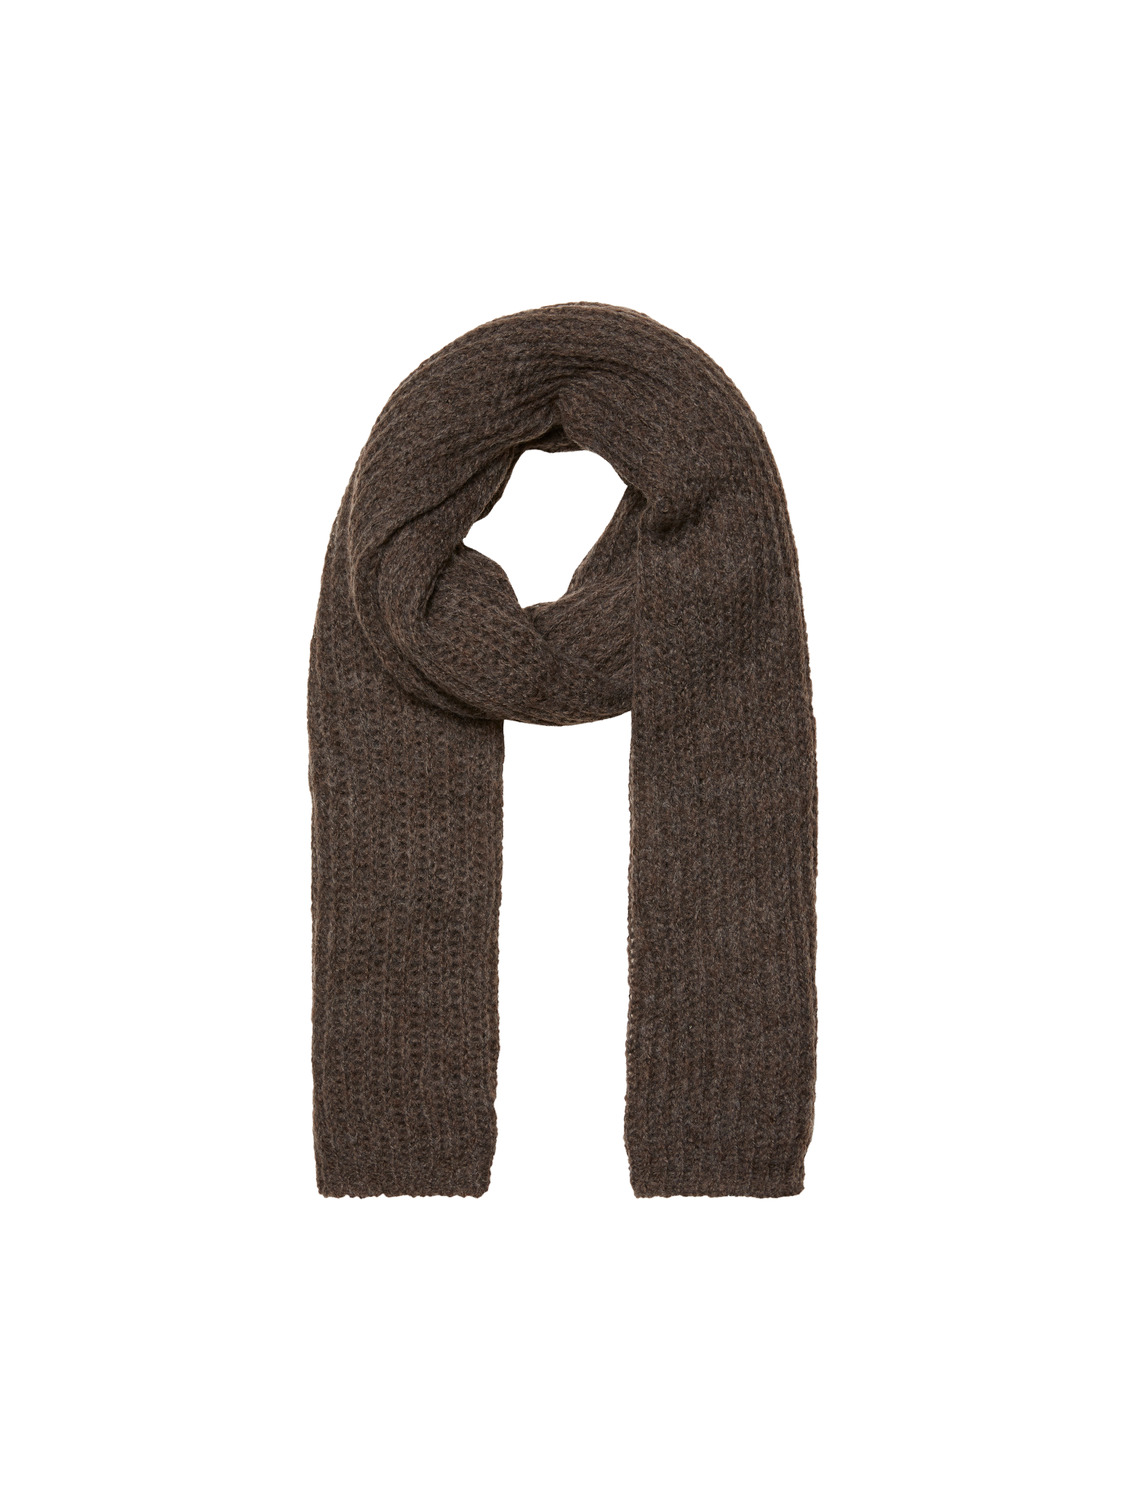 FINAL SALE - Karoline wool scarf, SHOPPING BAG, large